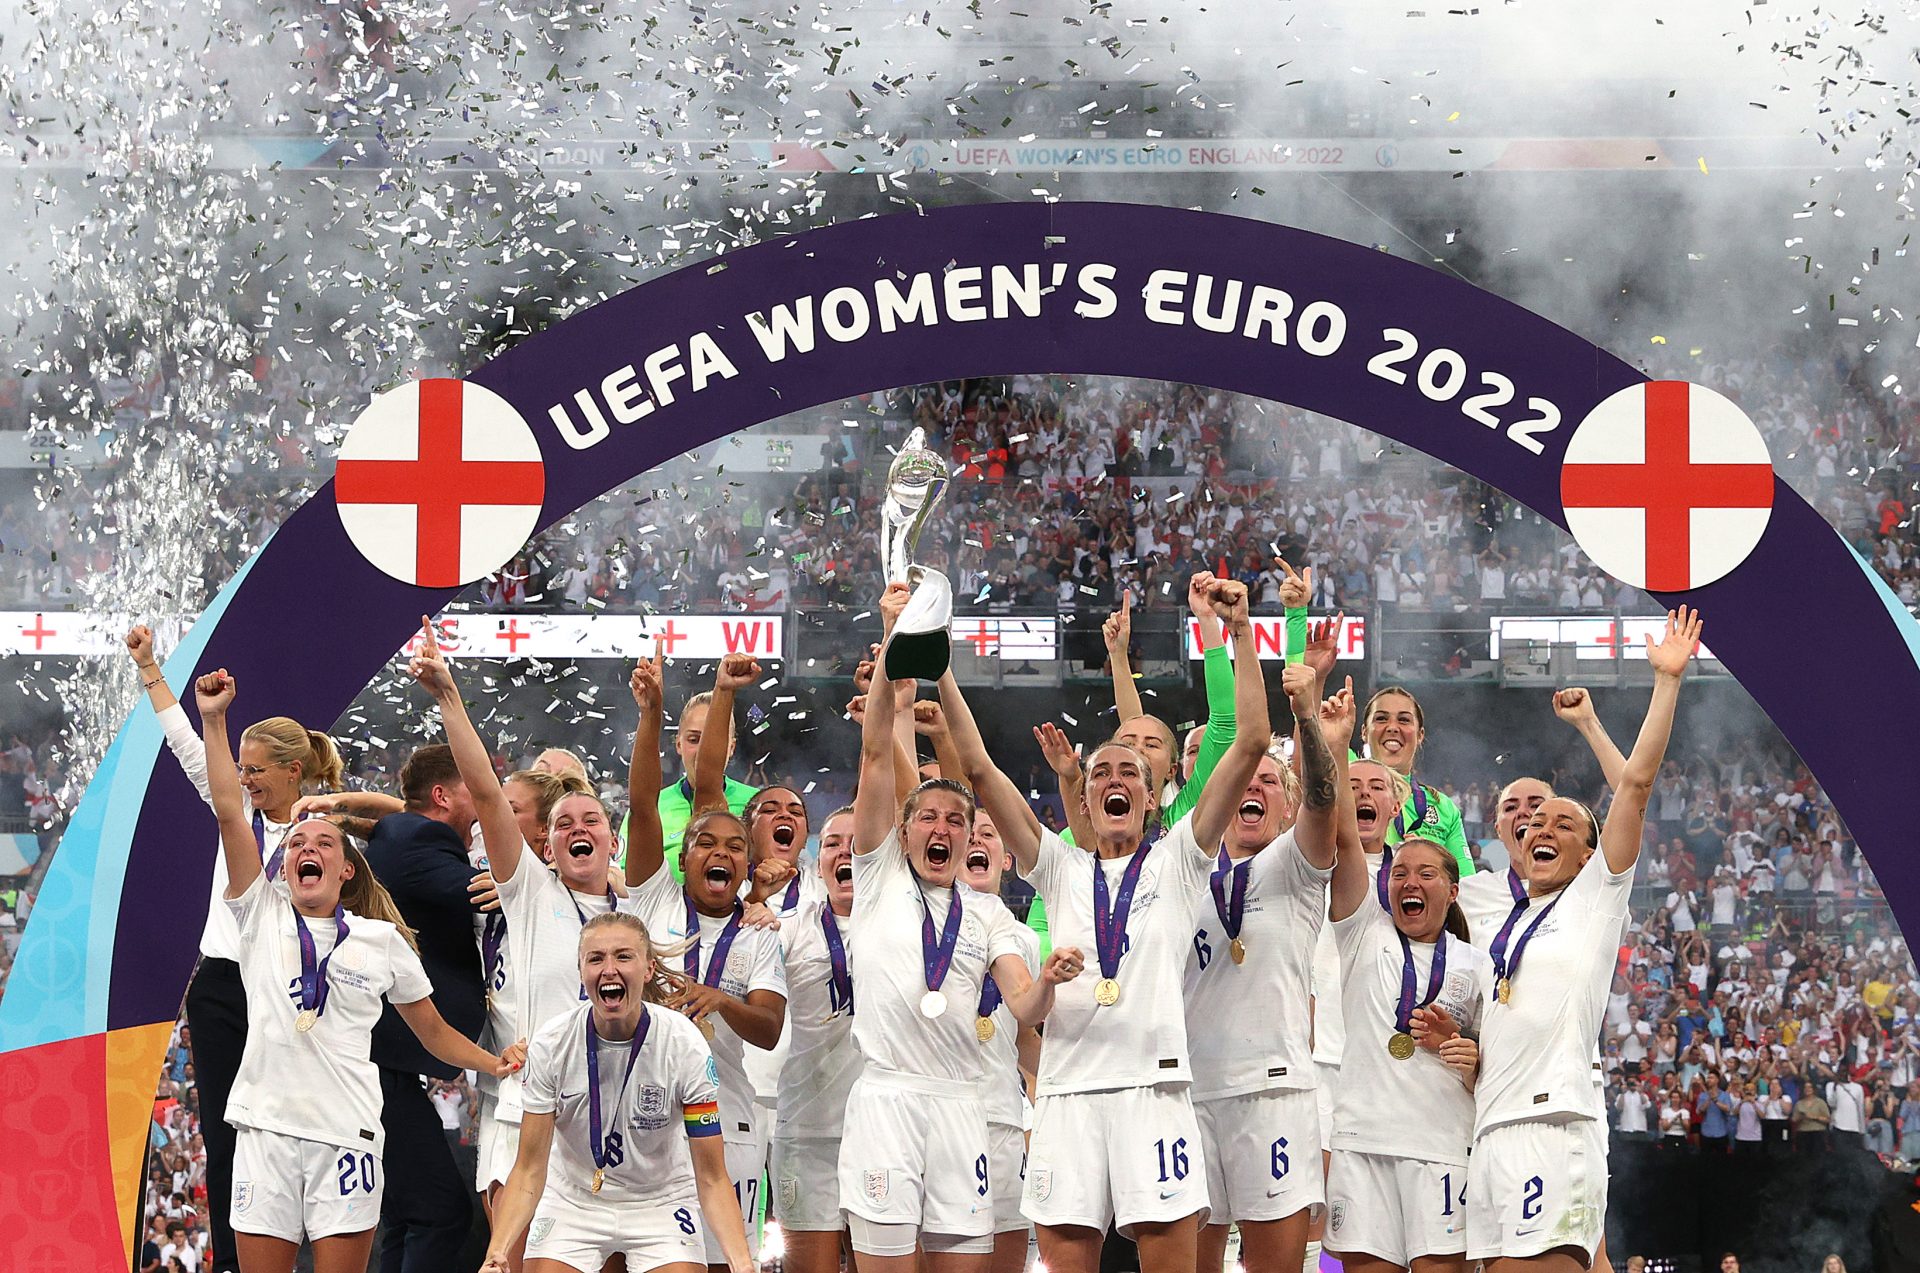 England v germany final uefa womens euro 2022 2 2